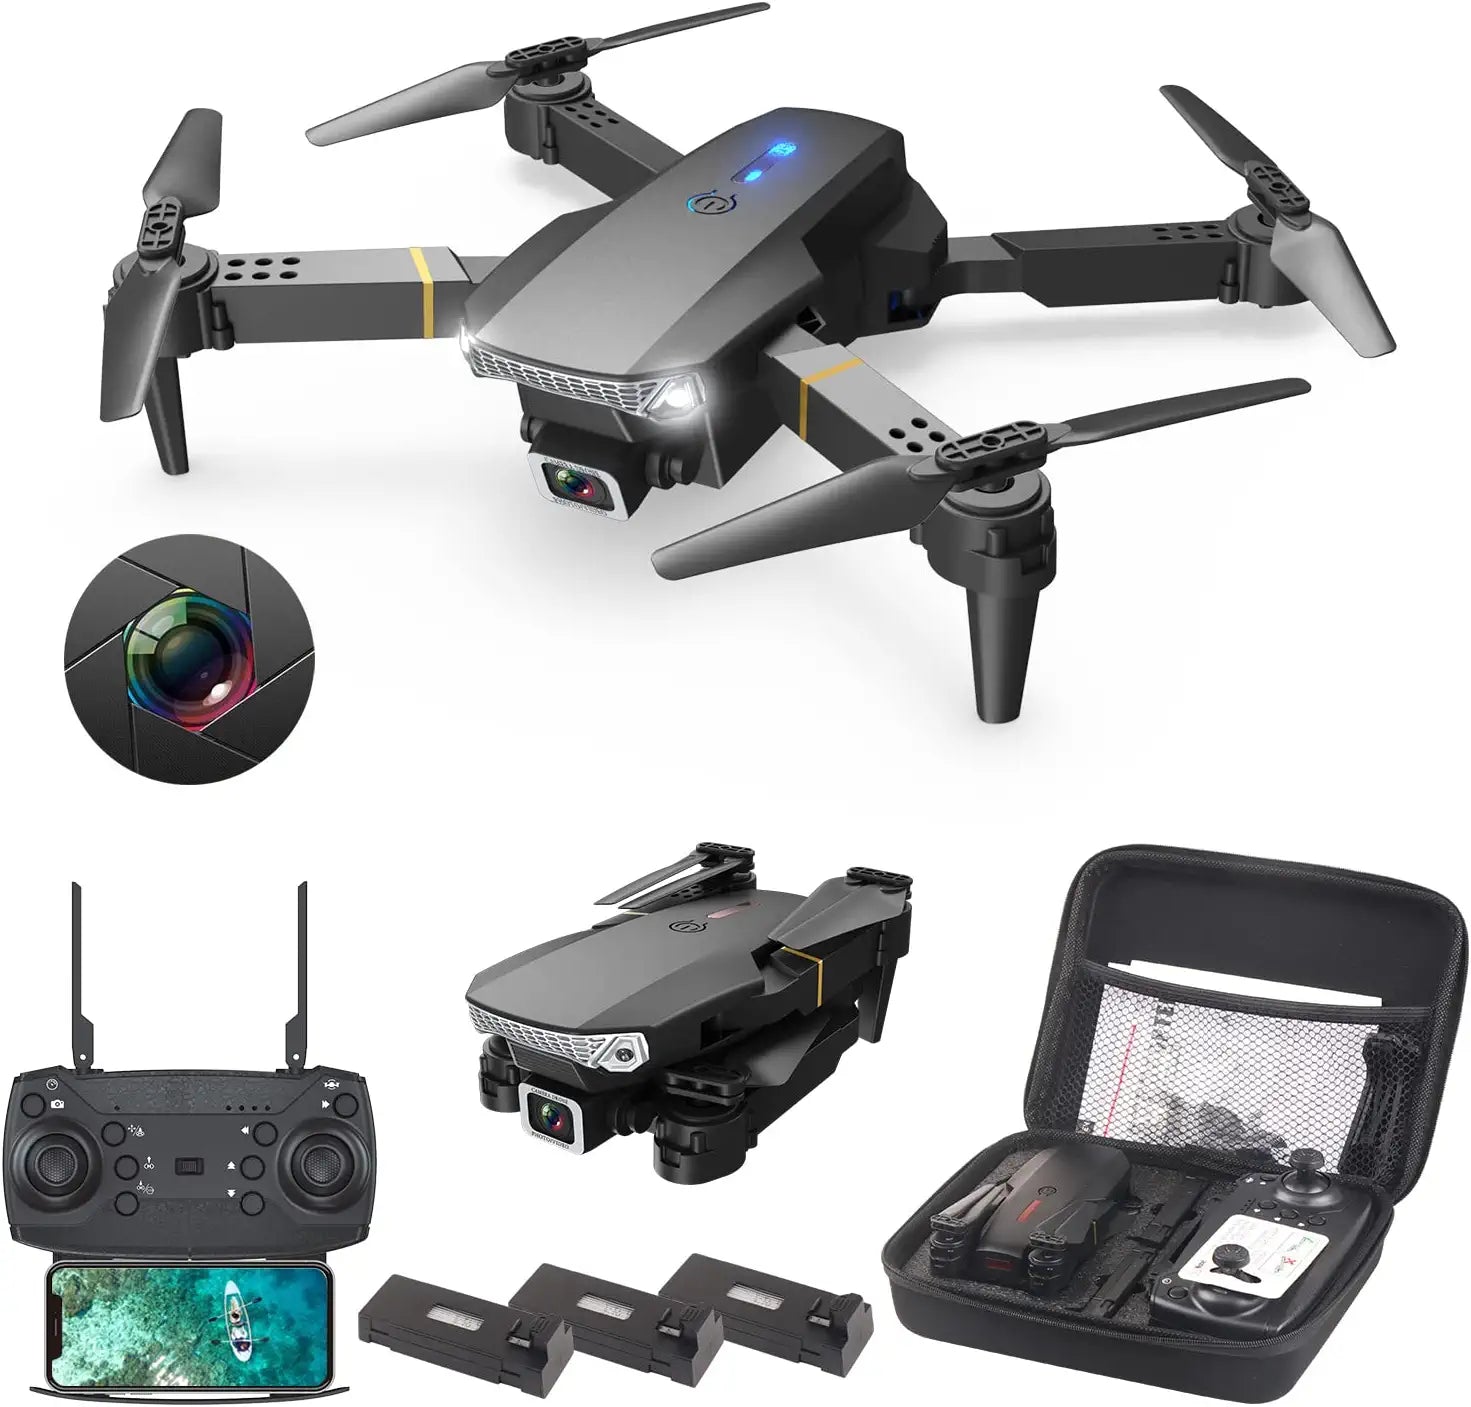 flugt Generelt sagt øverste hak Wipkviey T27 Drone - with 3 Batteries 360° Flip, Altitude Hold, Headless  Mode, One Key Take off/Landing Foldable Drone | Drone Price